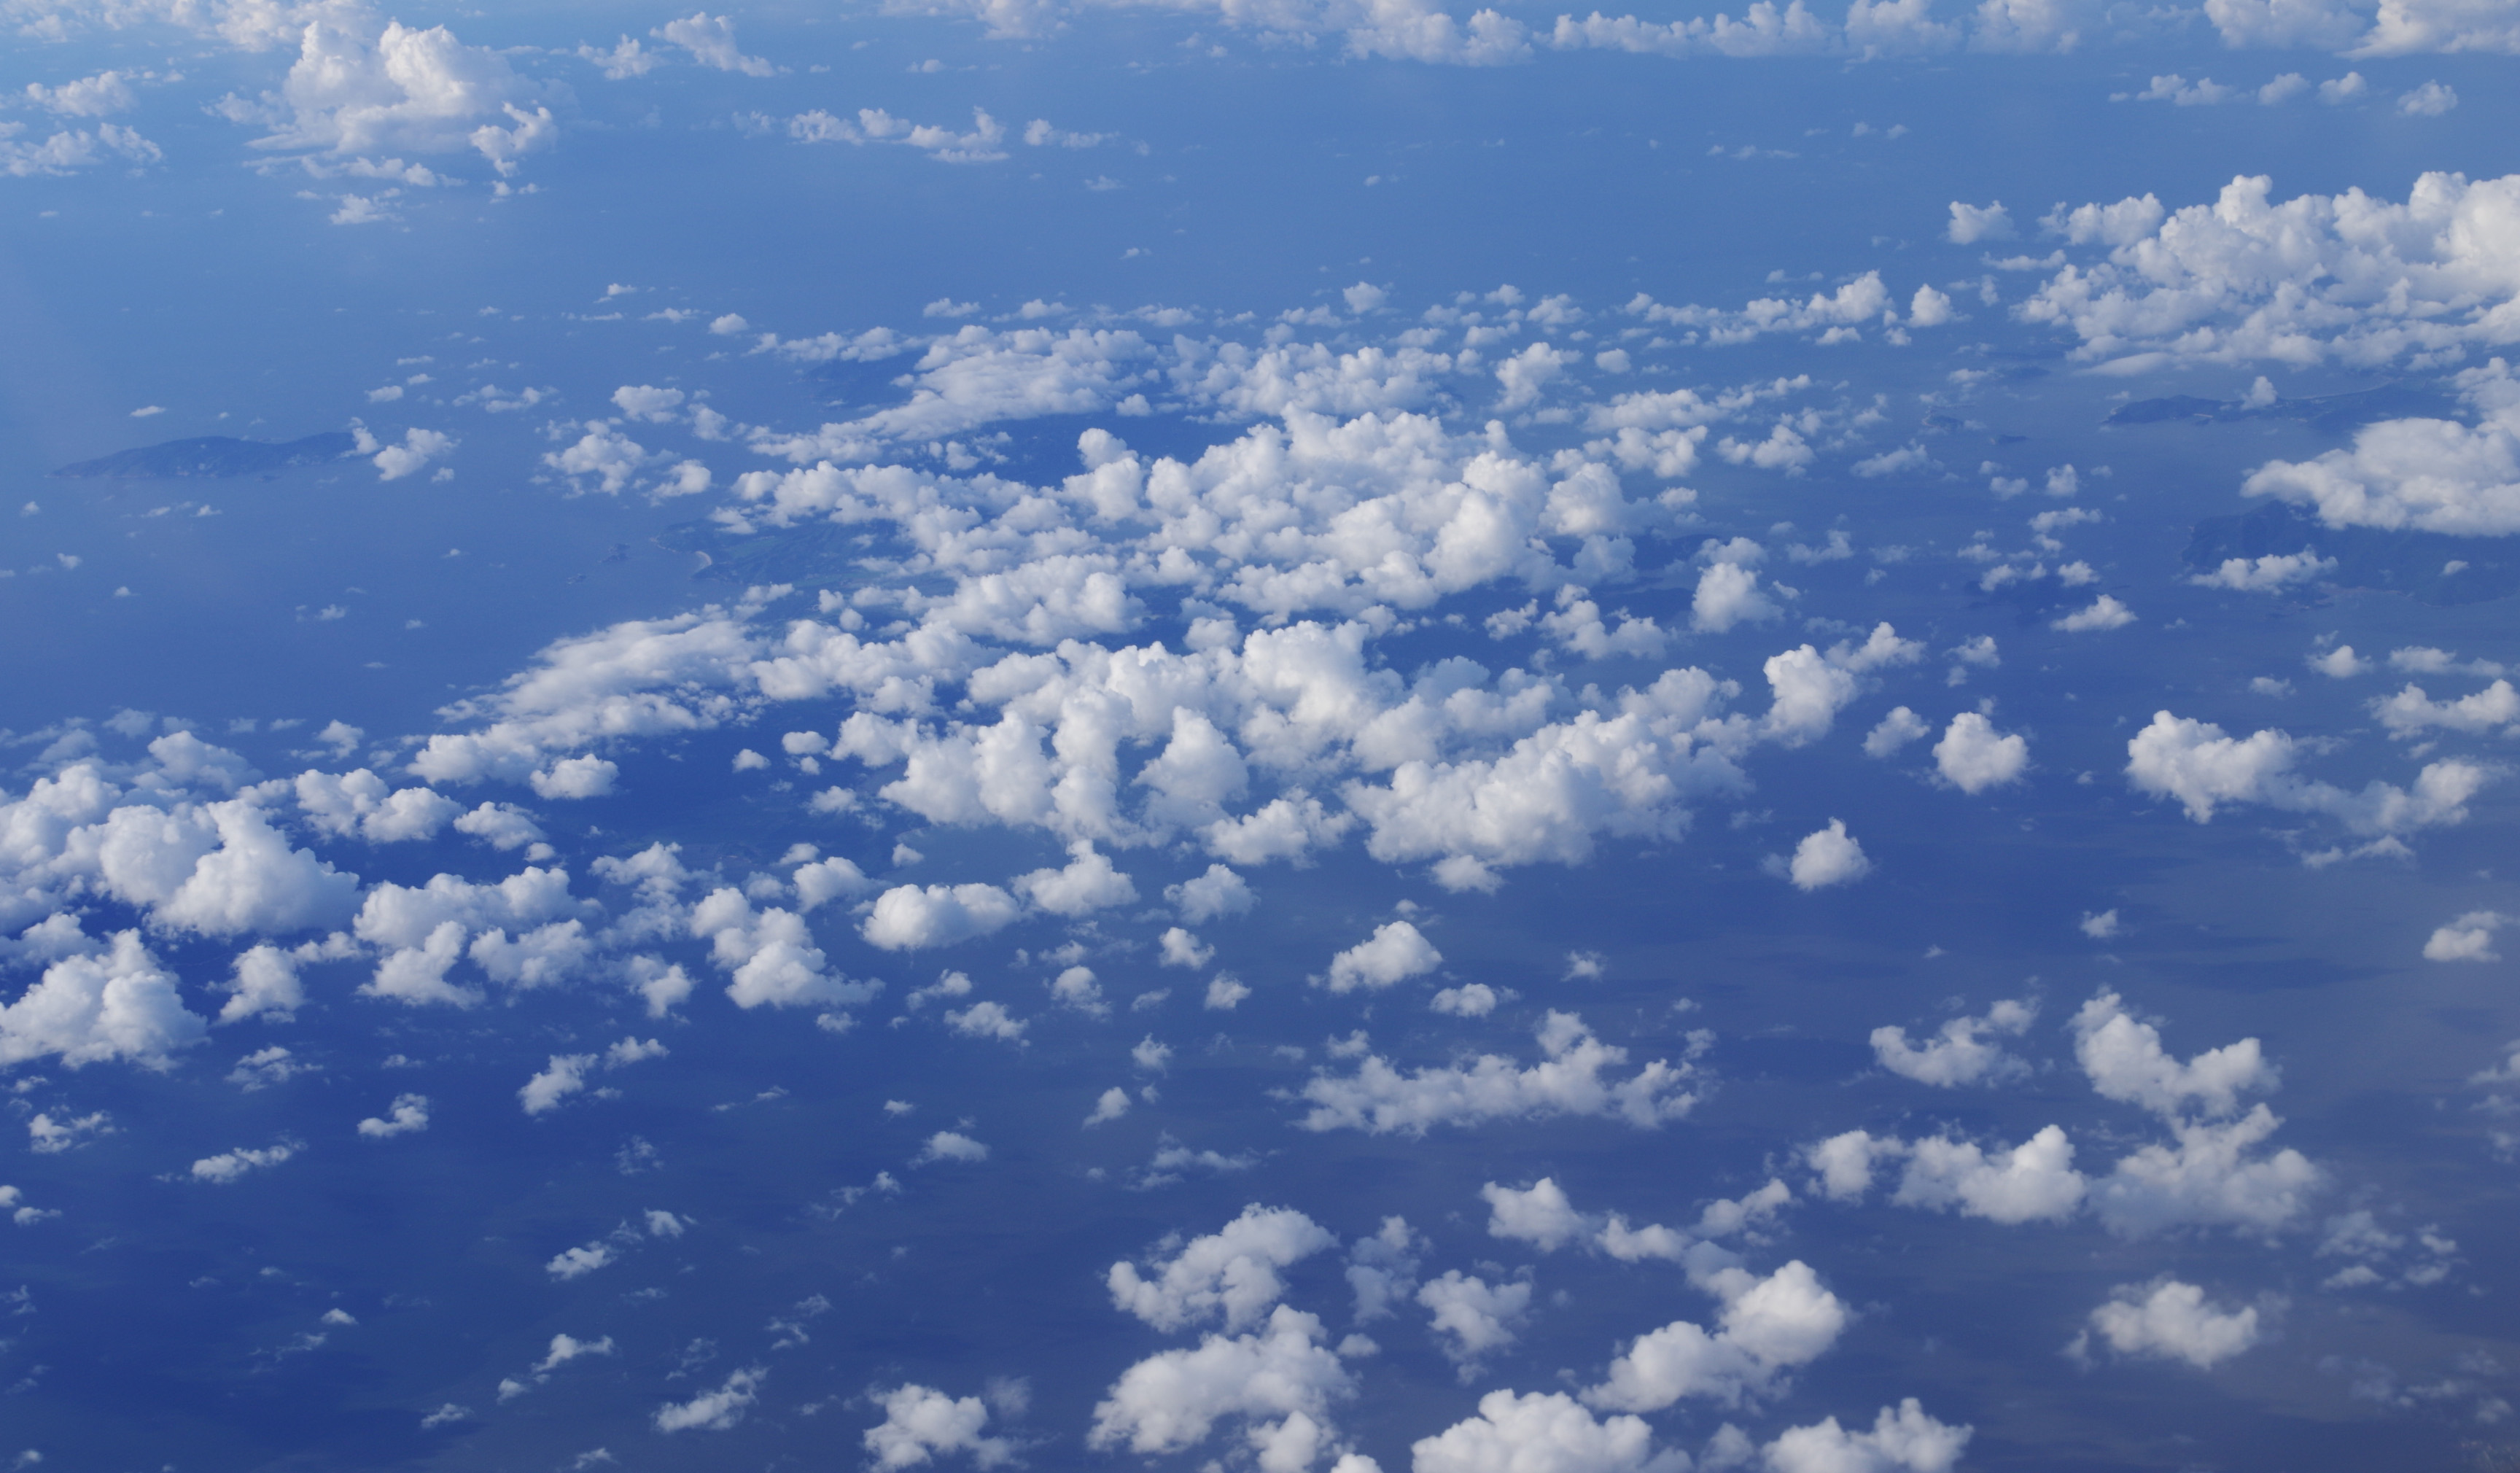 图片素材 : 地平线, 天空, 阳光, 大气层, 白天, 积云, 气象现象, 地球大气 3264x1836 - - 58476 - 素材中国, 高清壁纸 - PxHere摄影图库